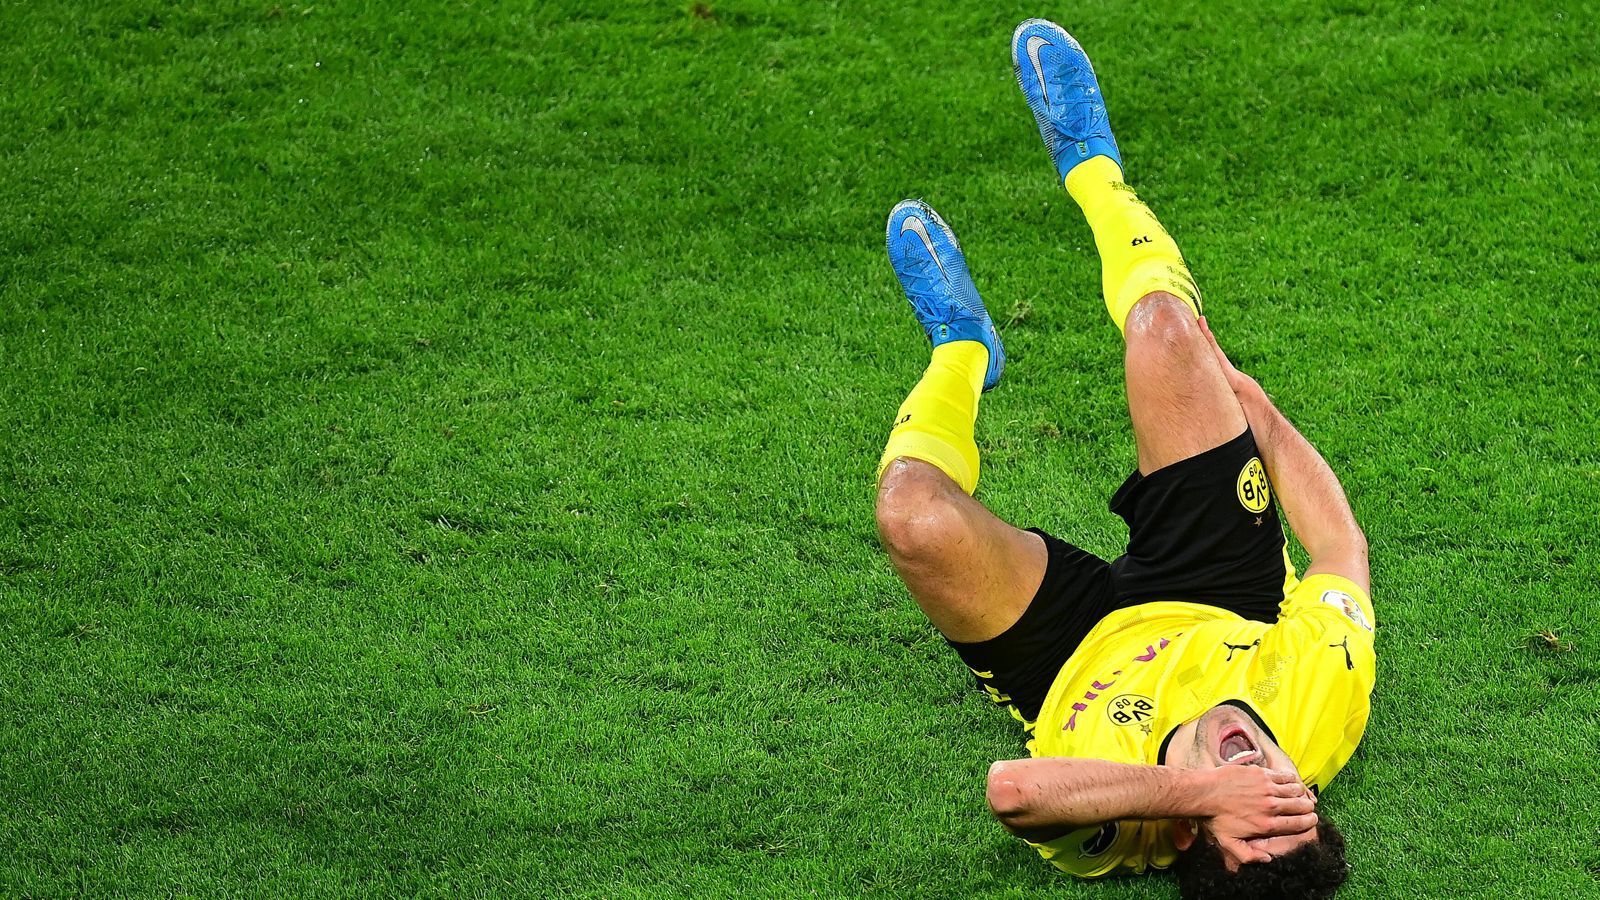 
                <strong>Mateu Moreys Verletzung schockt Borussia Dortmund</strong><br>
                "Es tut mir unendlich leid für den Jungen", sagt Hans-Joachim Watzke, Geschäftsführer von Borussia Dortmund, am Sonntag: "Heute sind alle Borussen und noch viele andere Menschen in Gedanken bei Mateu."
              